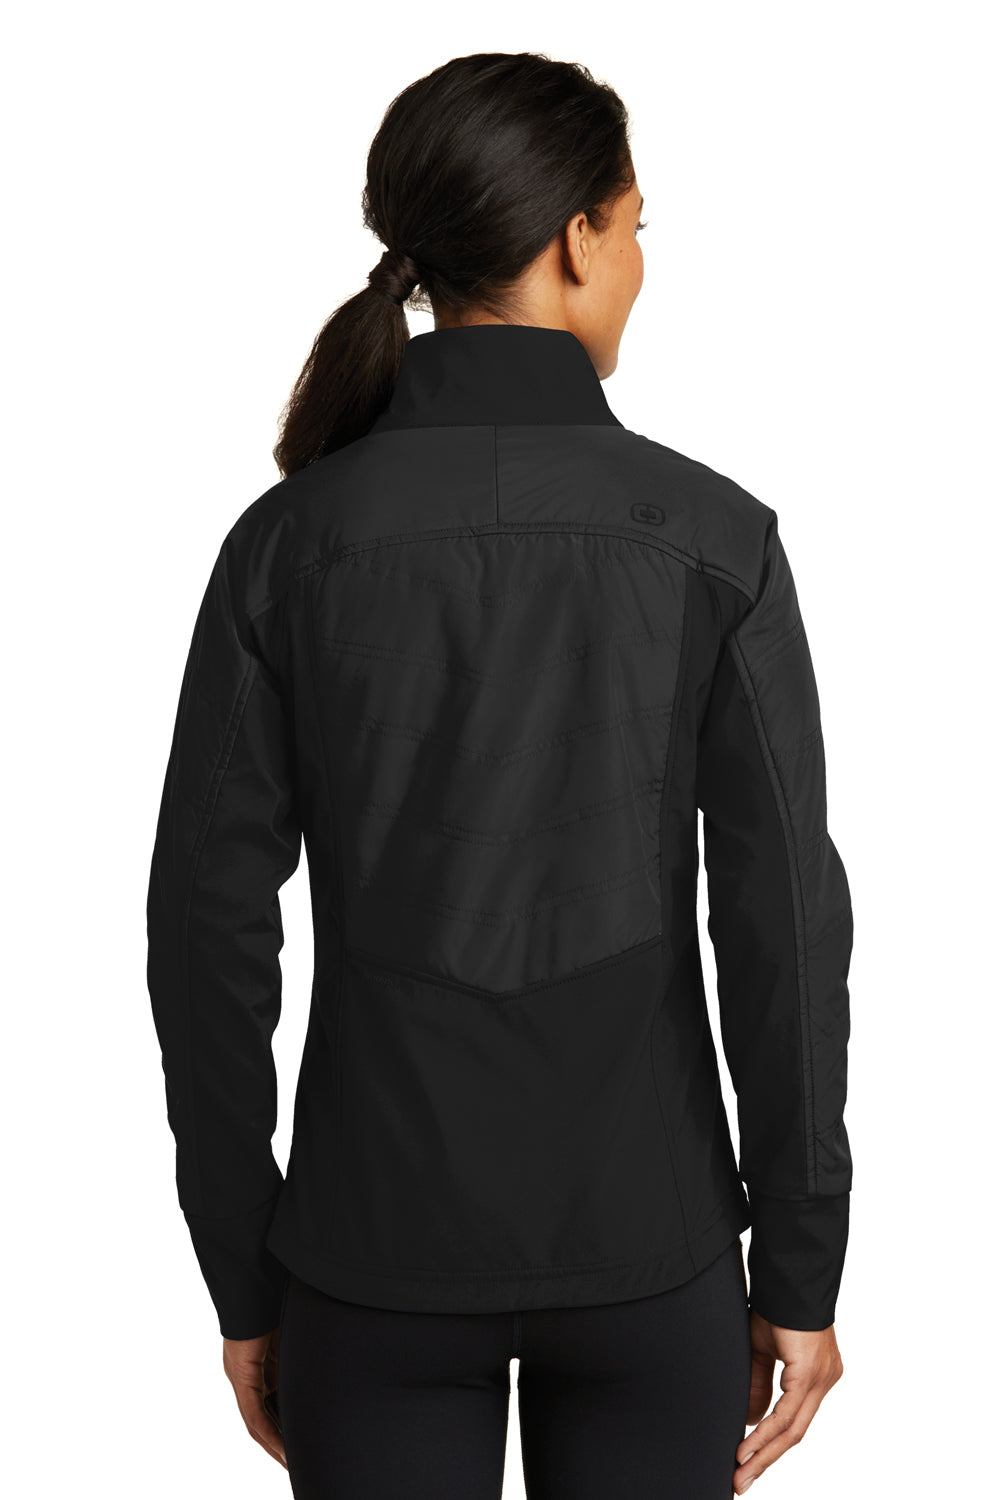 Ogio LOE722 Womens Endurance Brink Wind & Water Resistant Full Zip Jacket Black Back